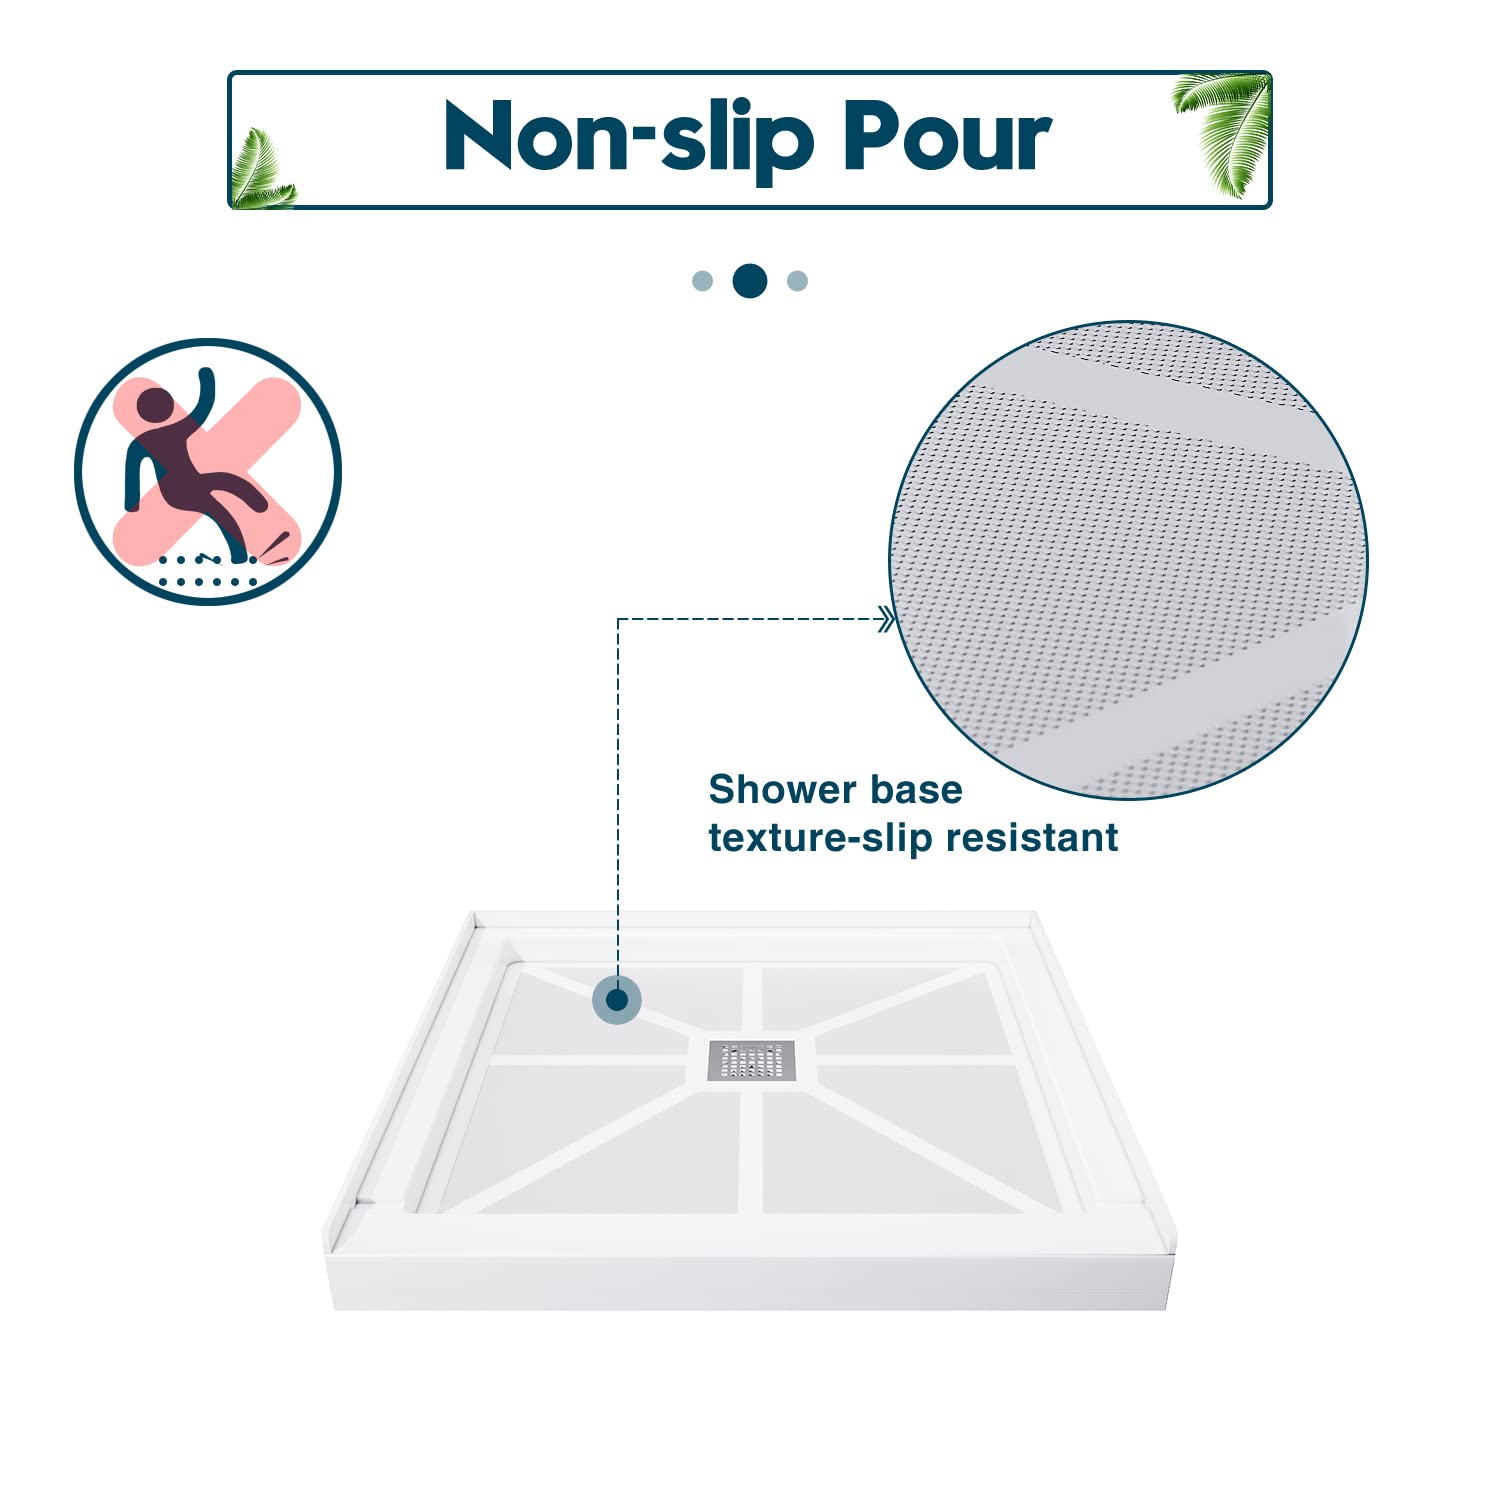 Non-slip Pour, Shower Base texture-slip resistant